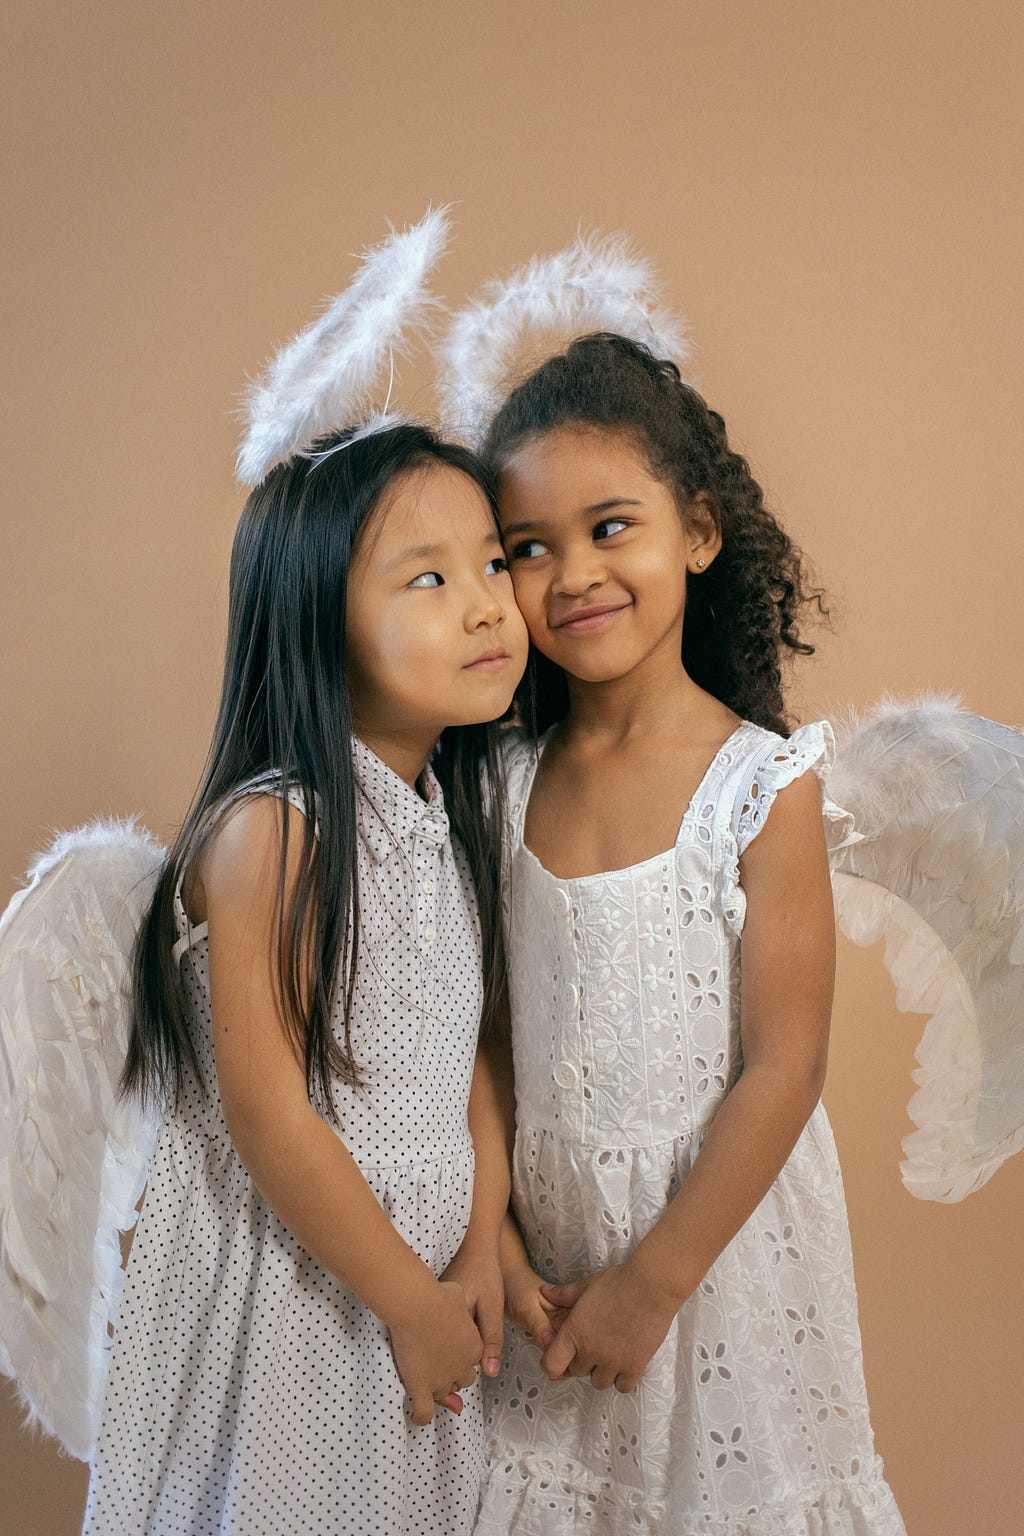 Two angelic girls in joyous mingling.